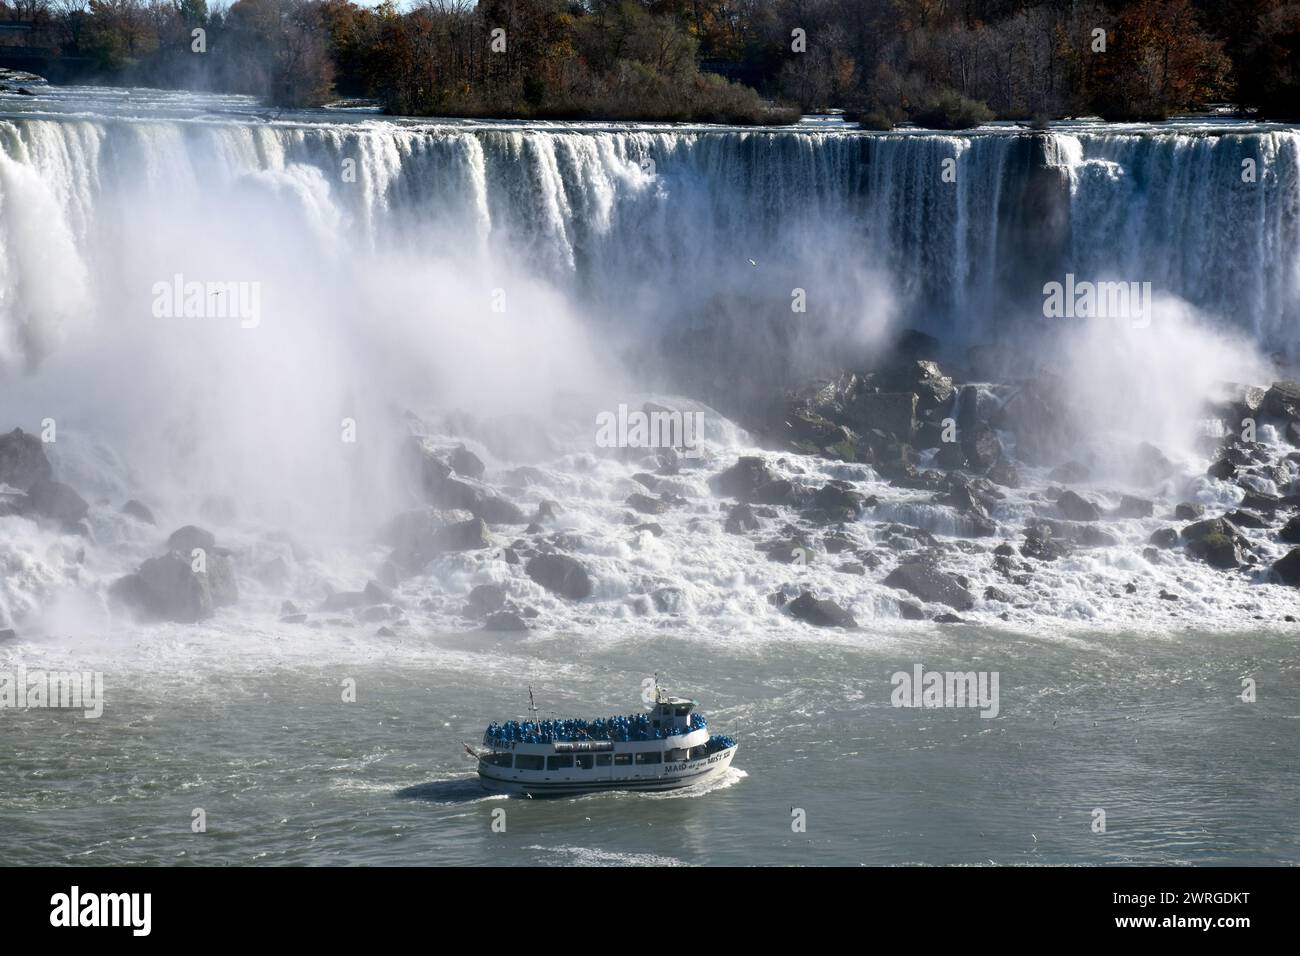 2 novembre 2015 - Niagara Falls, New York, Stati Uniti: Vista delle American Falls e dell'iconica Maid of the Mist, fotografata dal lato canadese. Foto Stock